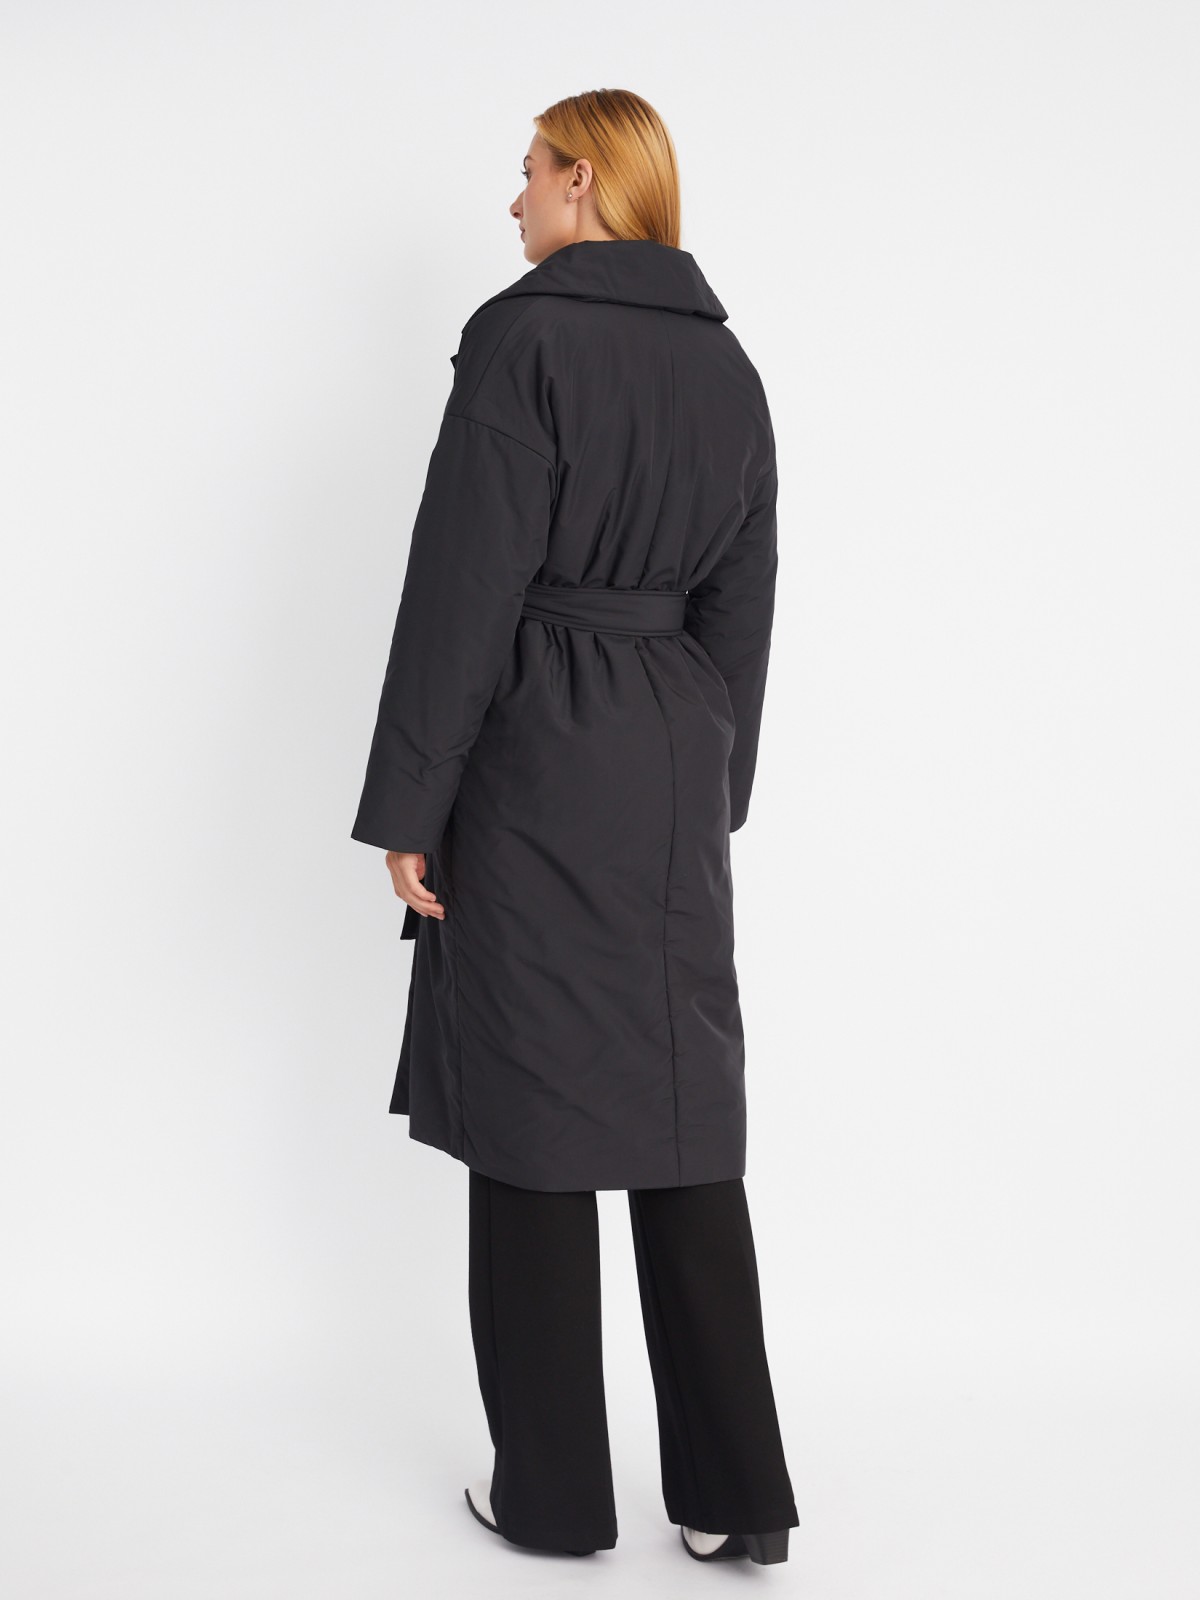 Тёплое пальто оверсайз силуэта на синтепоне с отложным воротником и поясом zolla 023335297244, цвет черный, размер L - фото 6